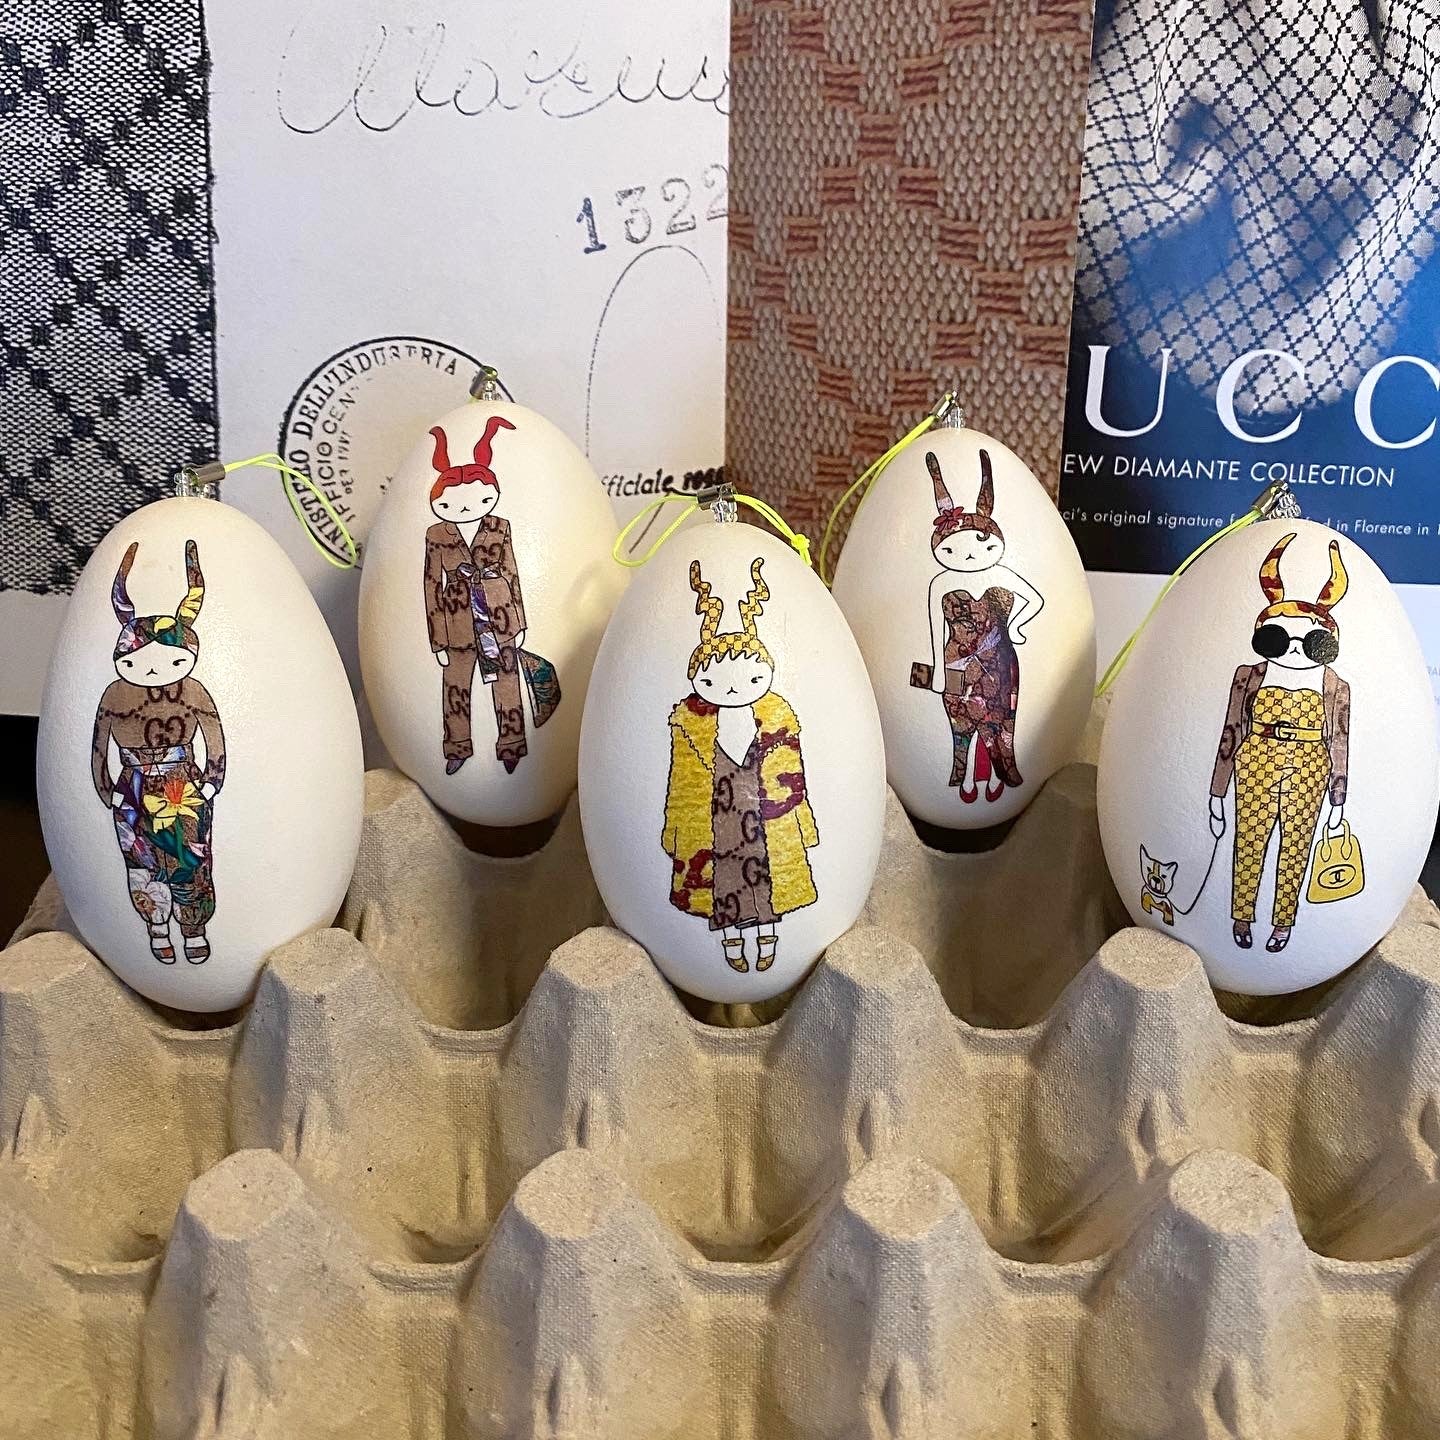 Ostereier-Deko: Echte Kunst trifft – Eier auf ei-nzigartig